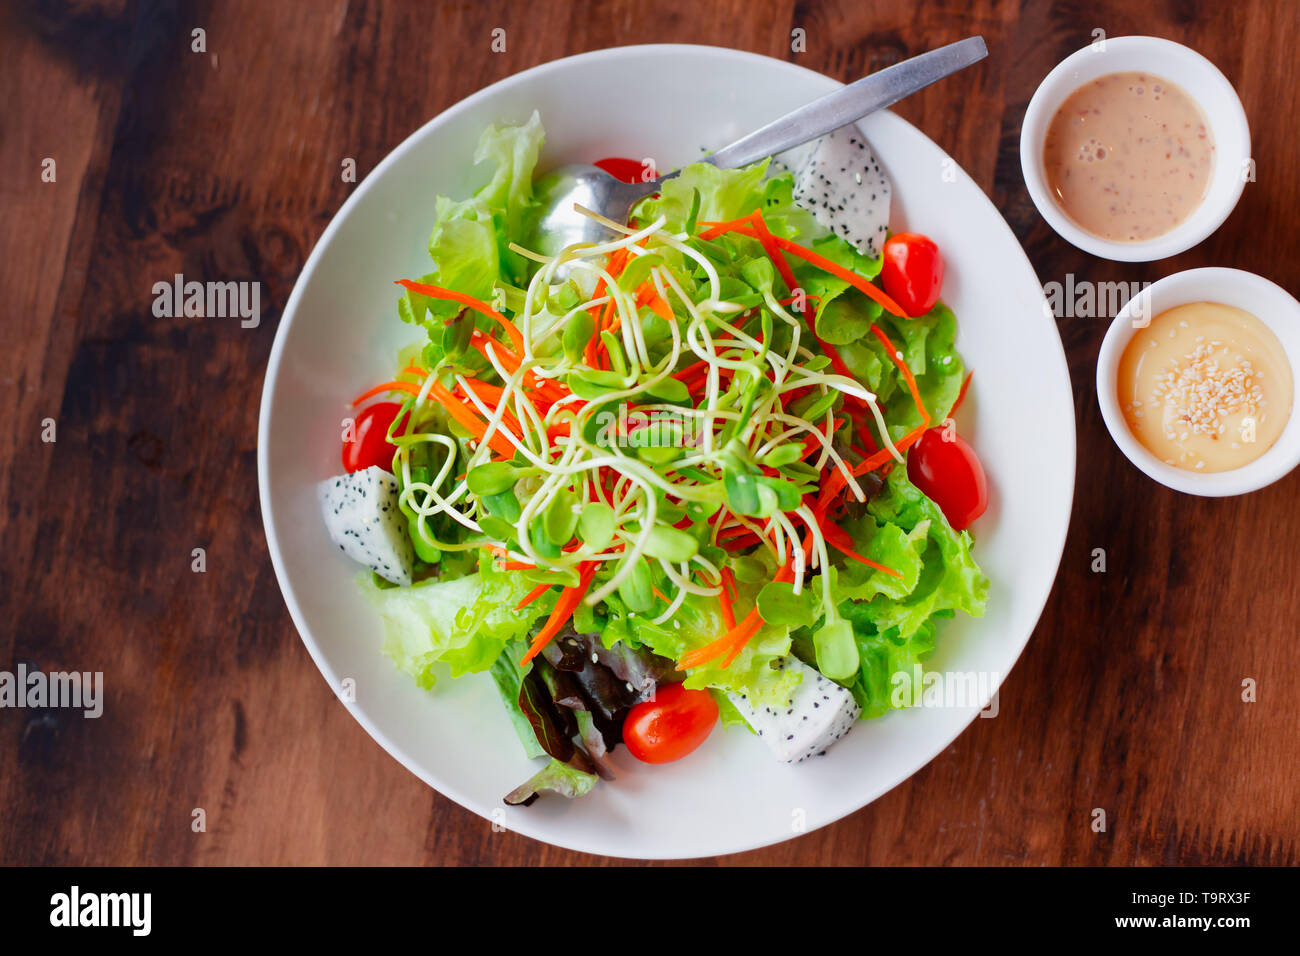 Gemüse Obst gemischter Salat mit Sauce, saubere und gesunde Lebensmittel für Vegetarier low fat High fiber Draufsicht auf hölzernen Tisch Stockfoto